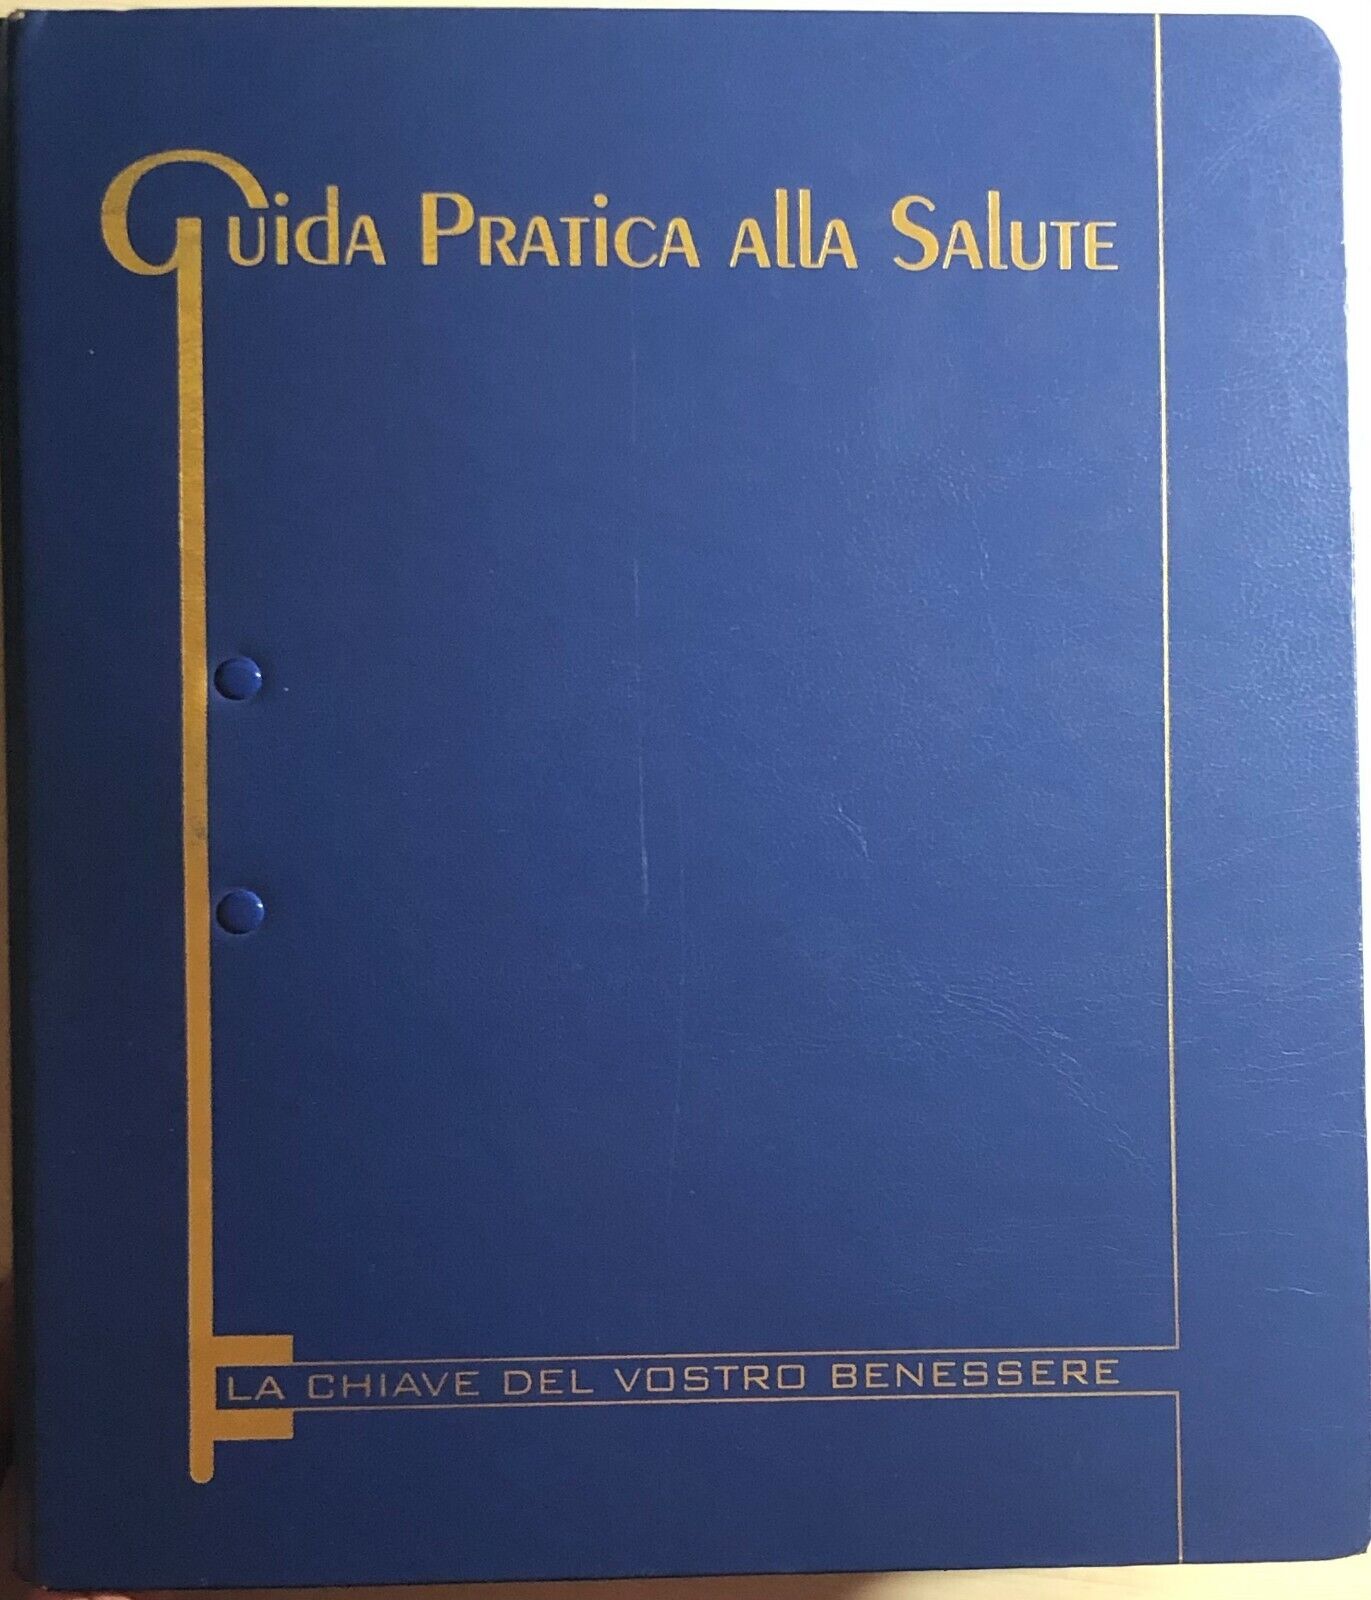 Guida pratica alla salute di Aa.vv.,  1998,  International Master Publishers